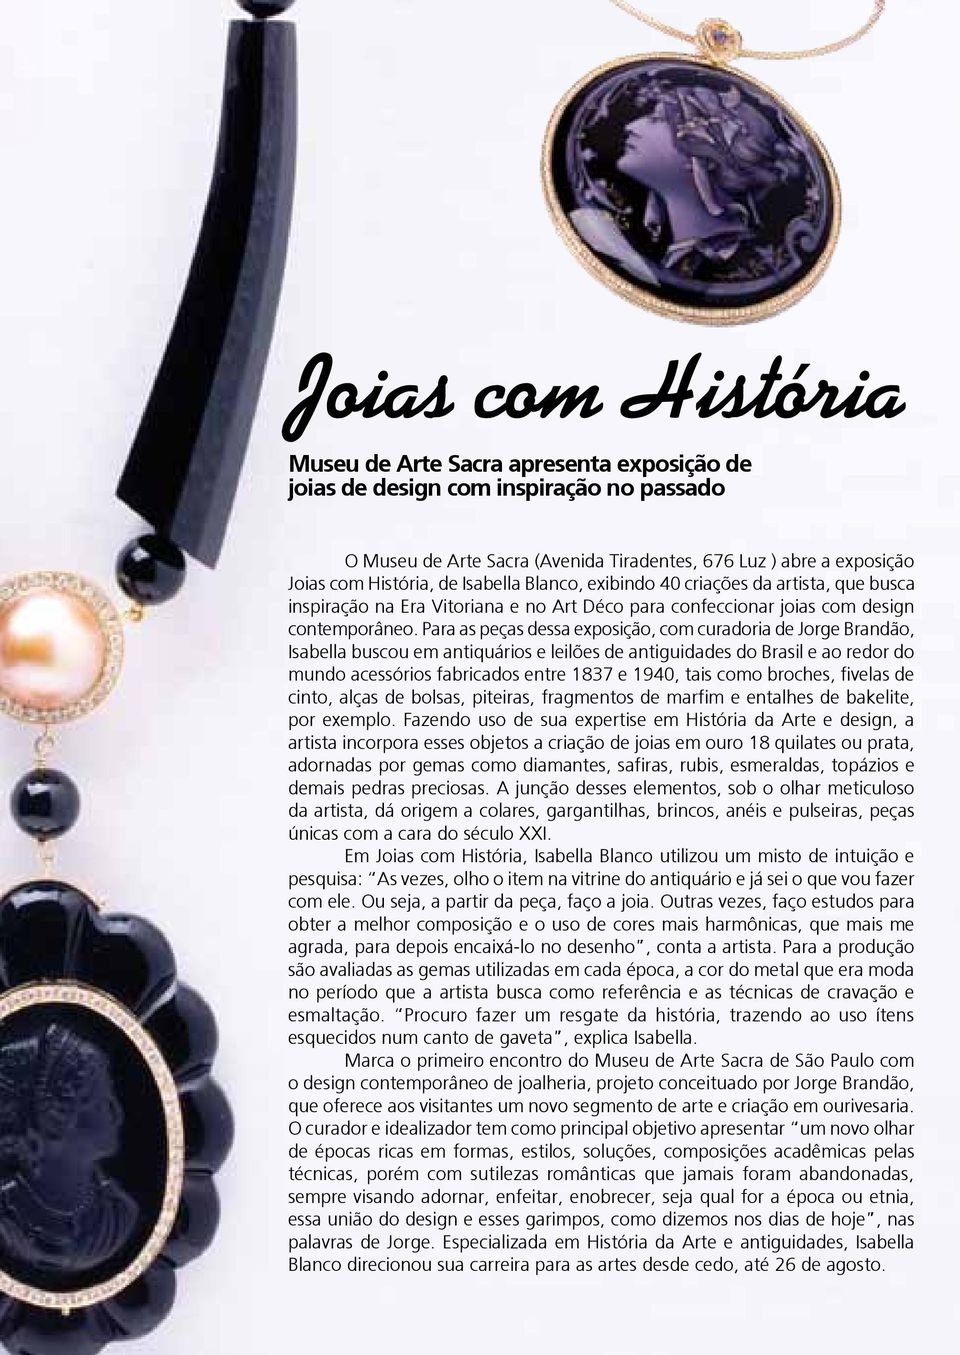 Para as peças dessa exposição, com curadoria de Jorge Brandão, Isabella buscou em antiquários e leilões de antiguidades do Brasil e ao redor do mundo acessórios fabricados entre 1837 e 1940, tais